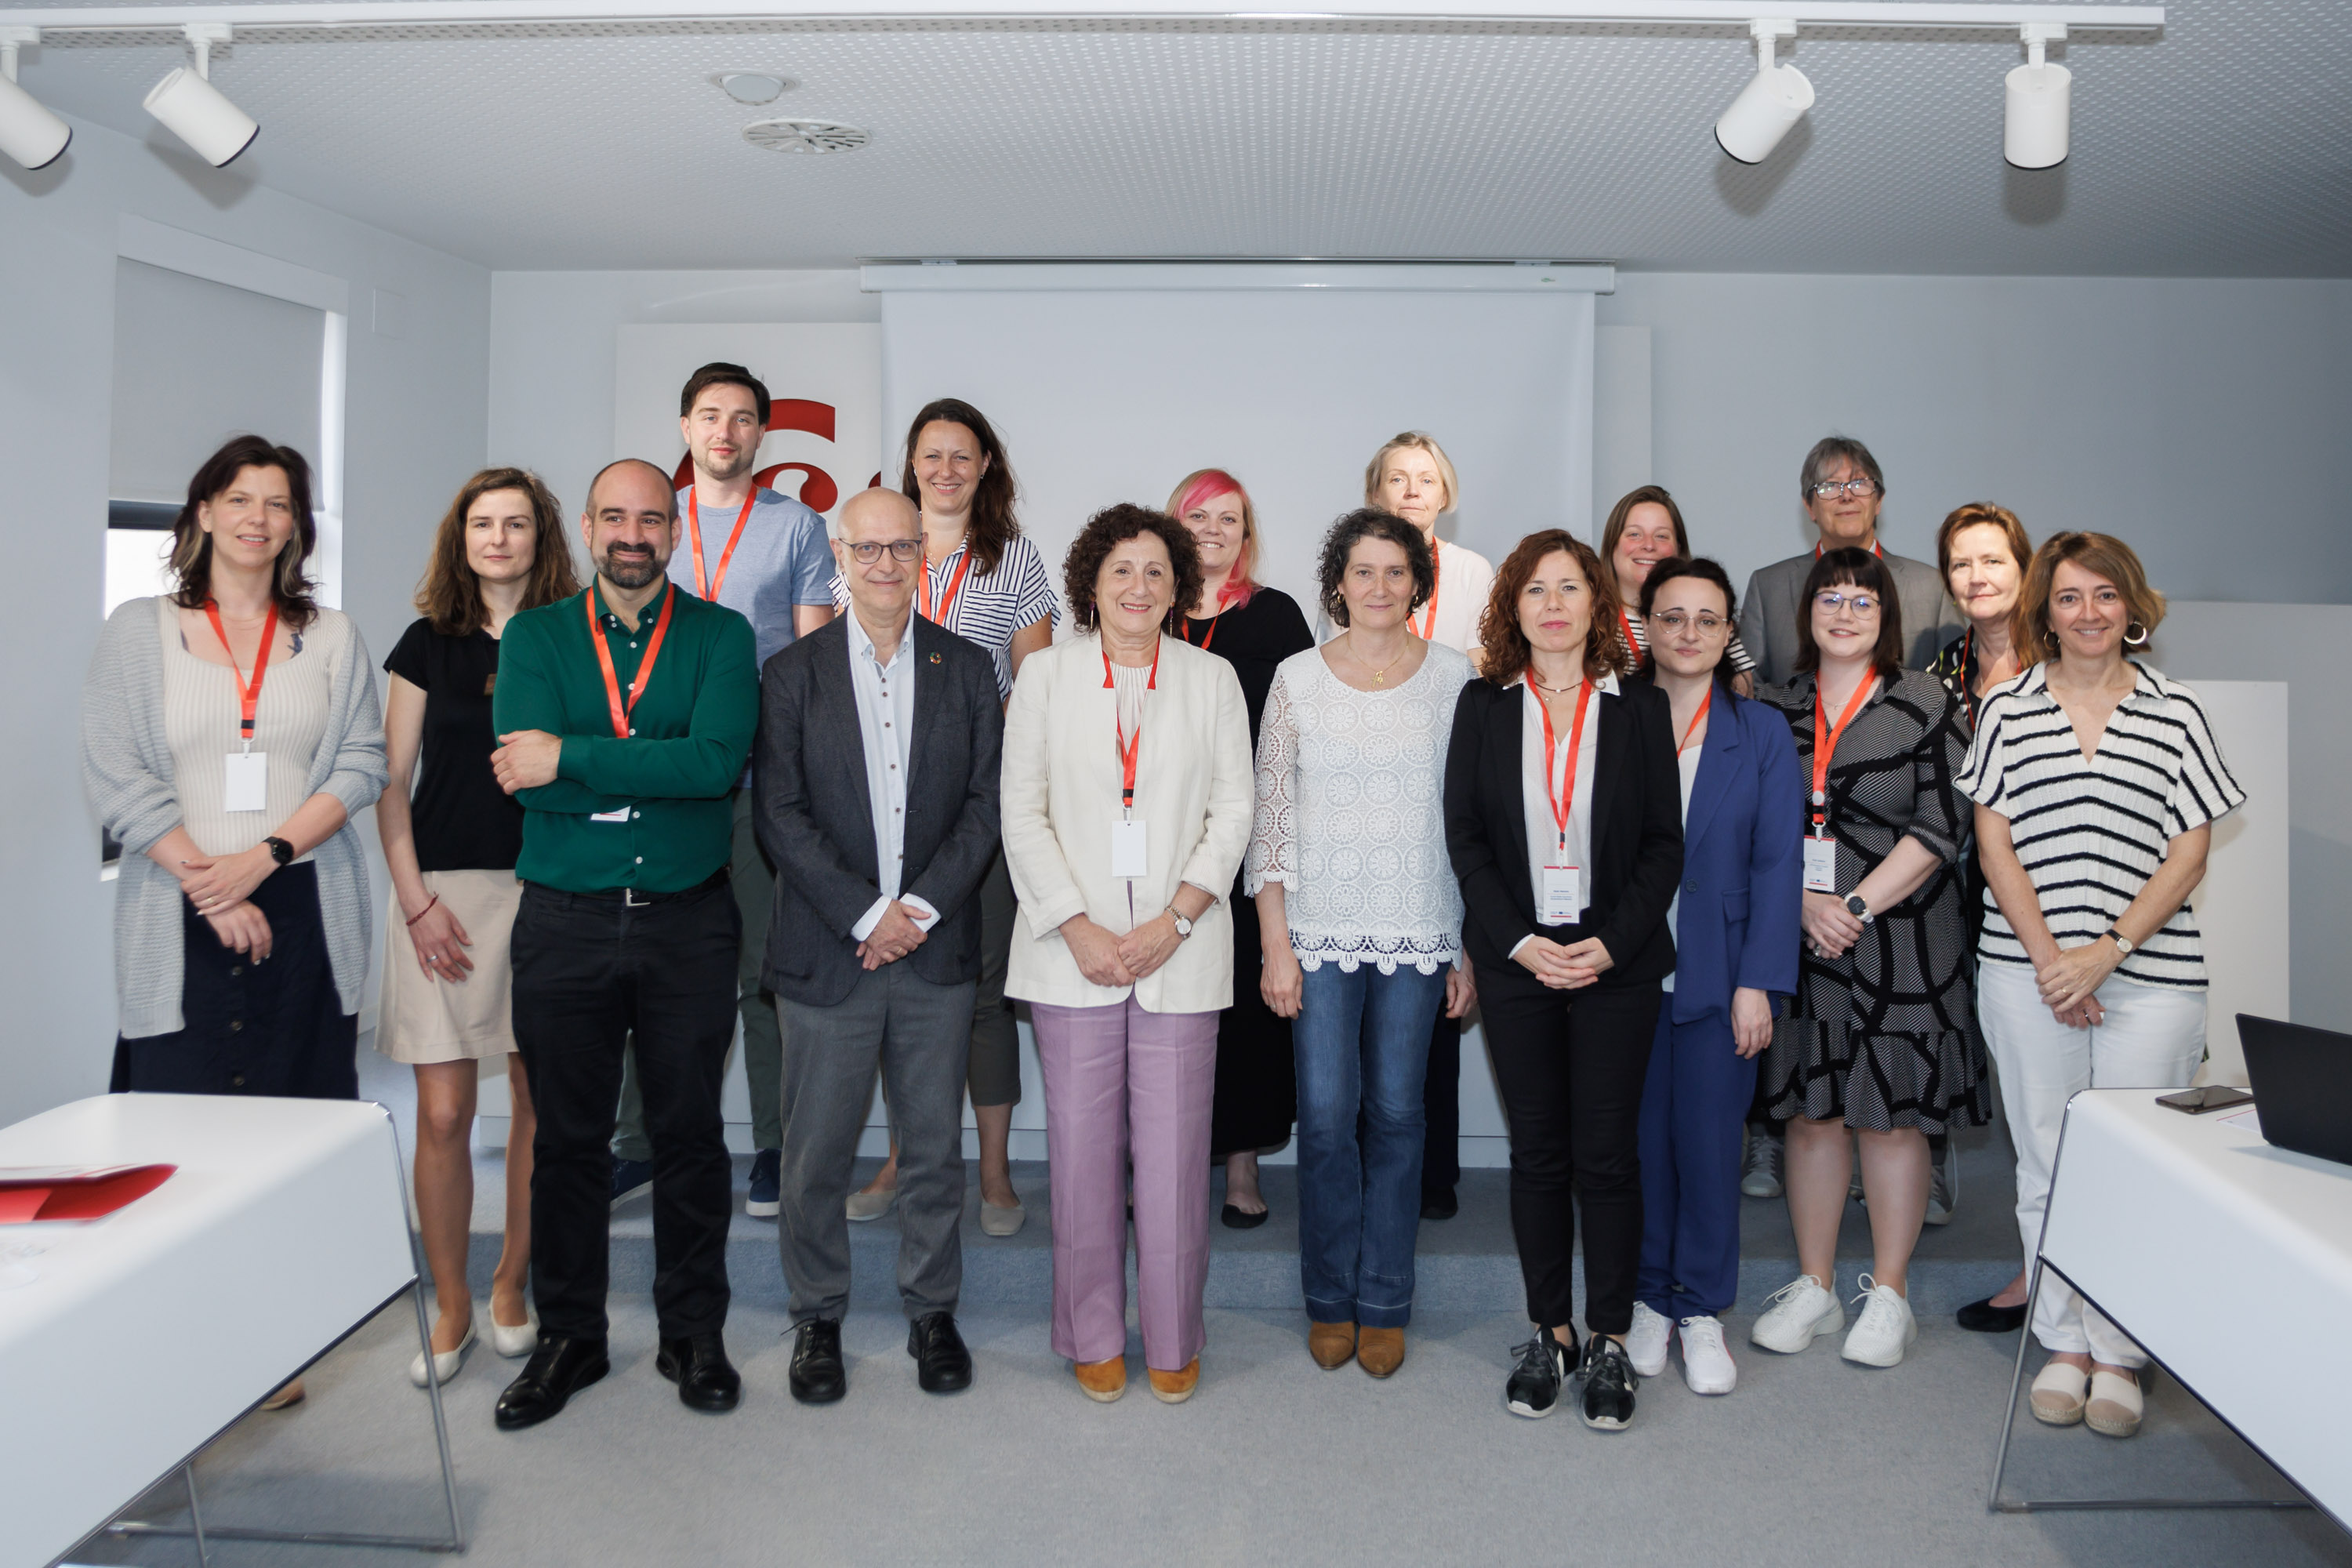 Foto de grupo de la consejera Maeztu con representantes de las 5 regiones 
europeas participantes en el encuentro.